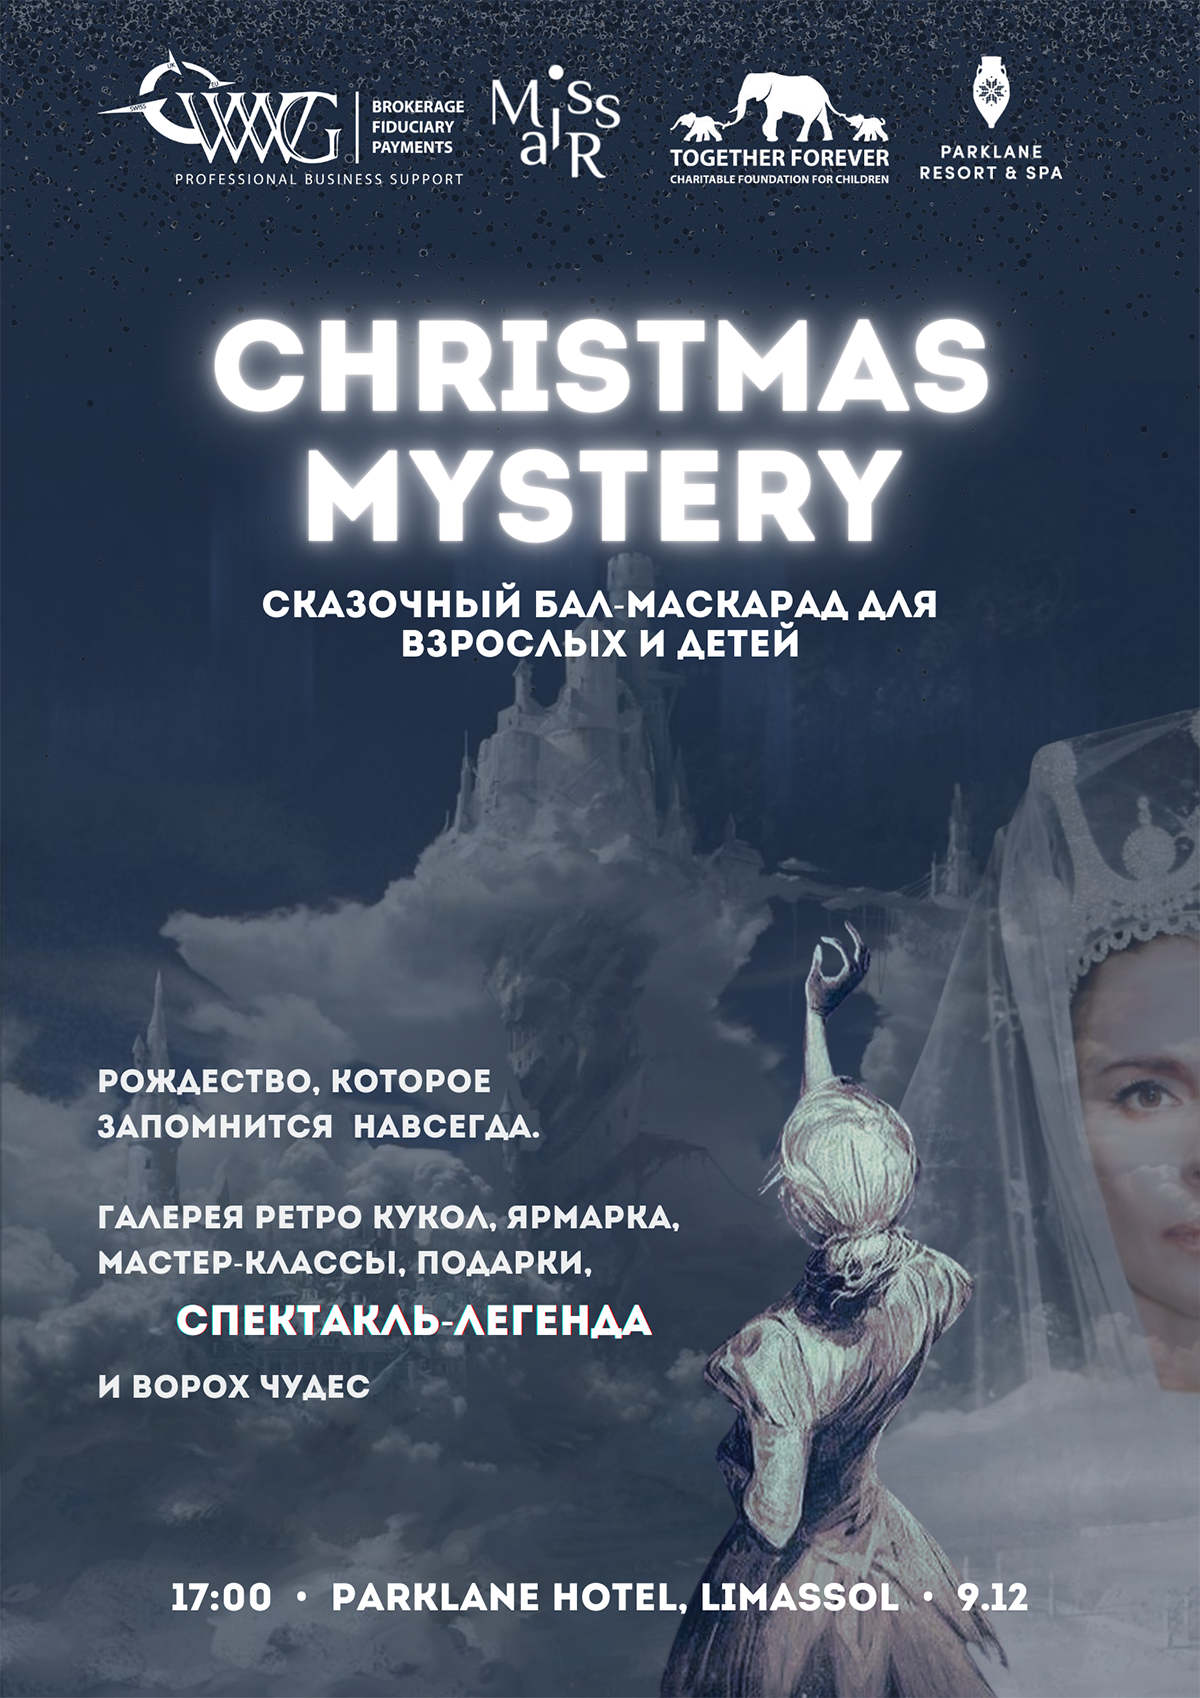 CHRISTMAS MYSTERY